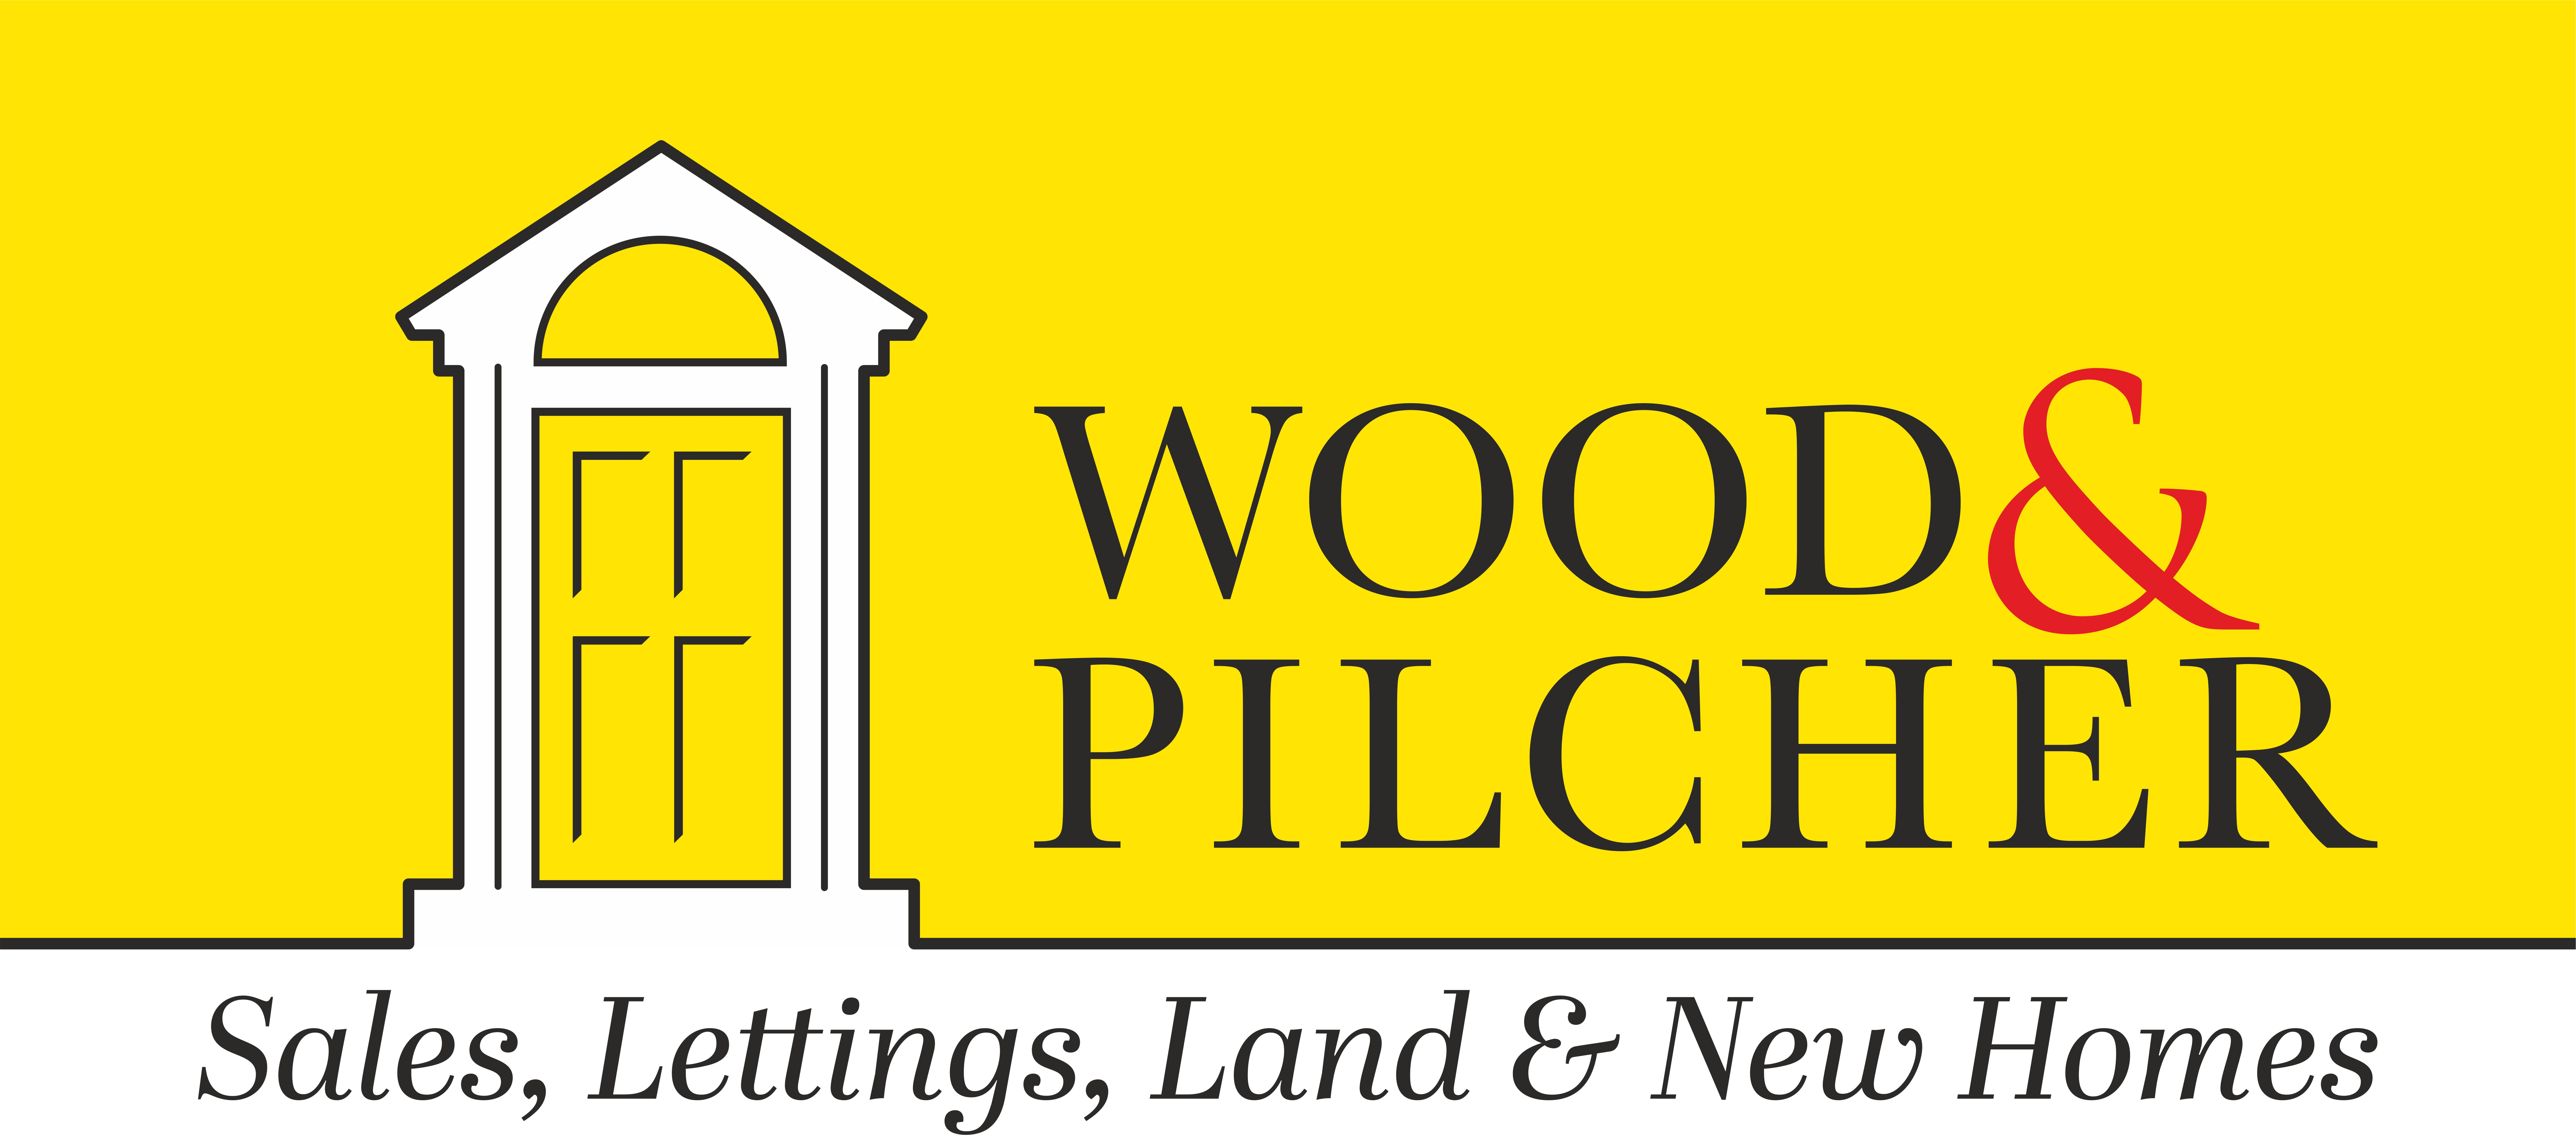 Wood & Pilcher